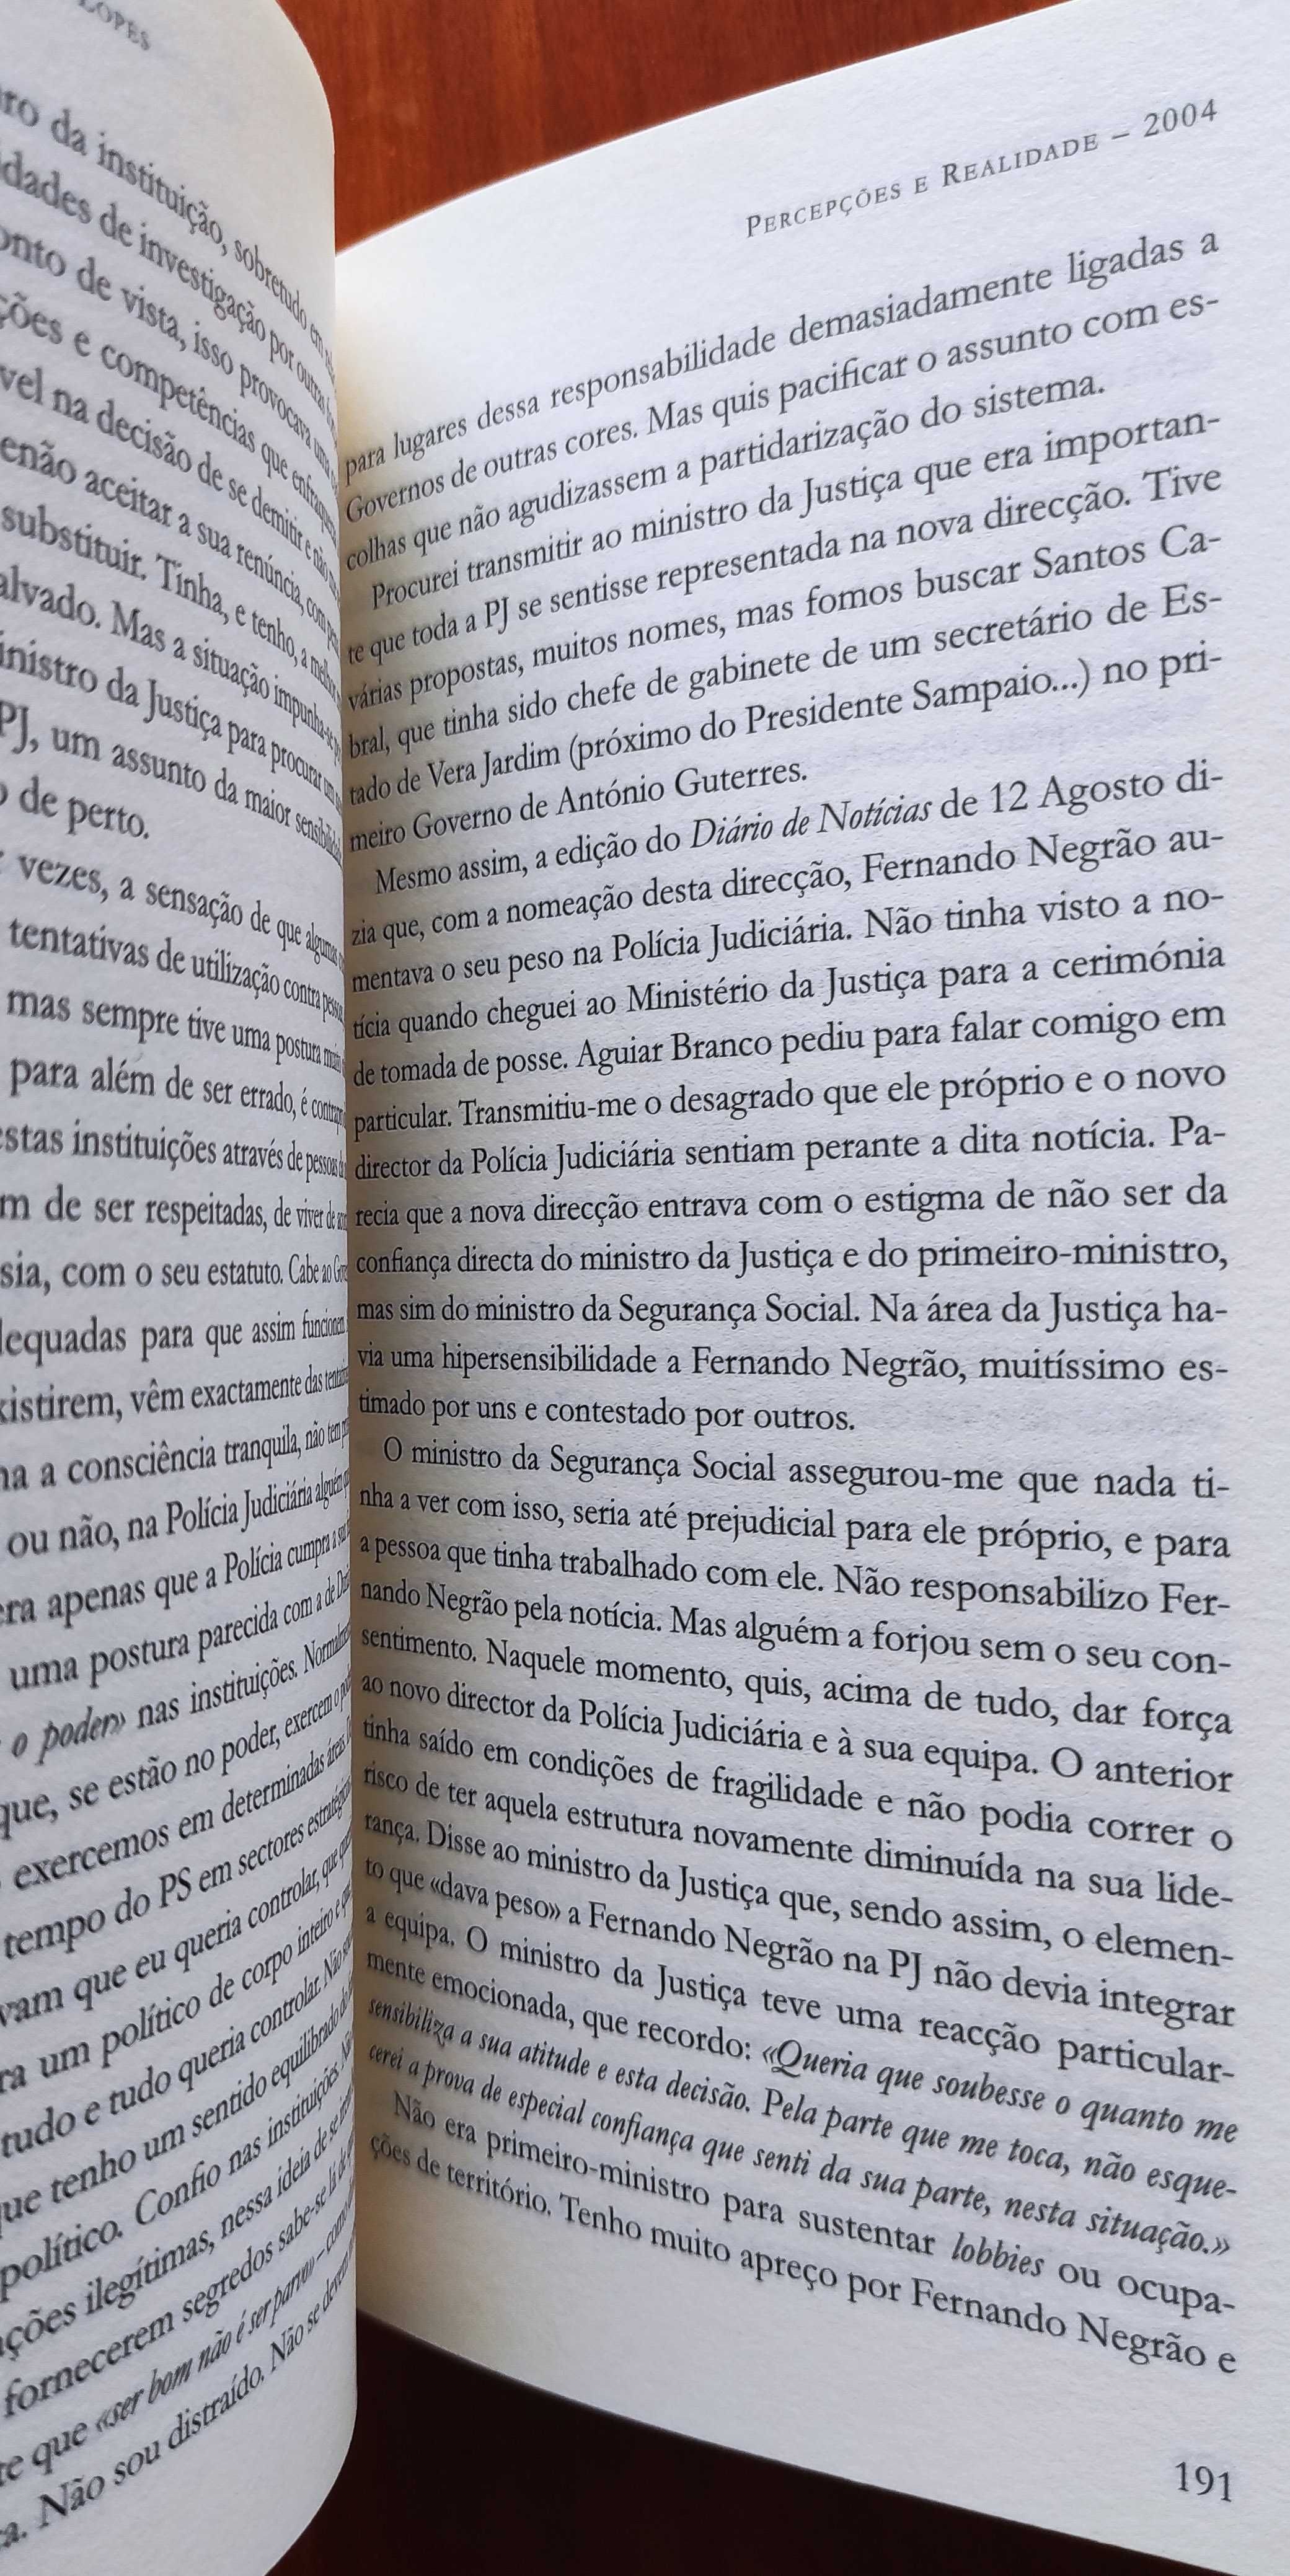 Percepções e Realidade - Pedro Santana Lopes